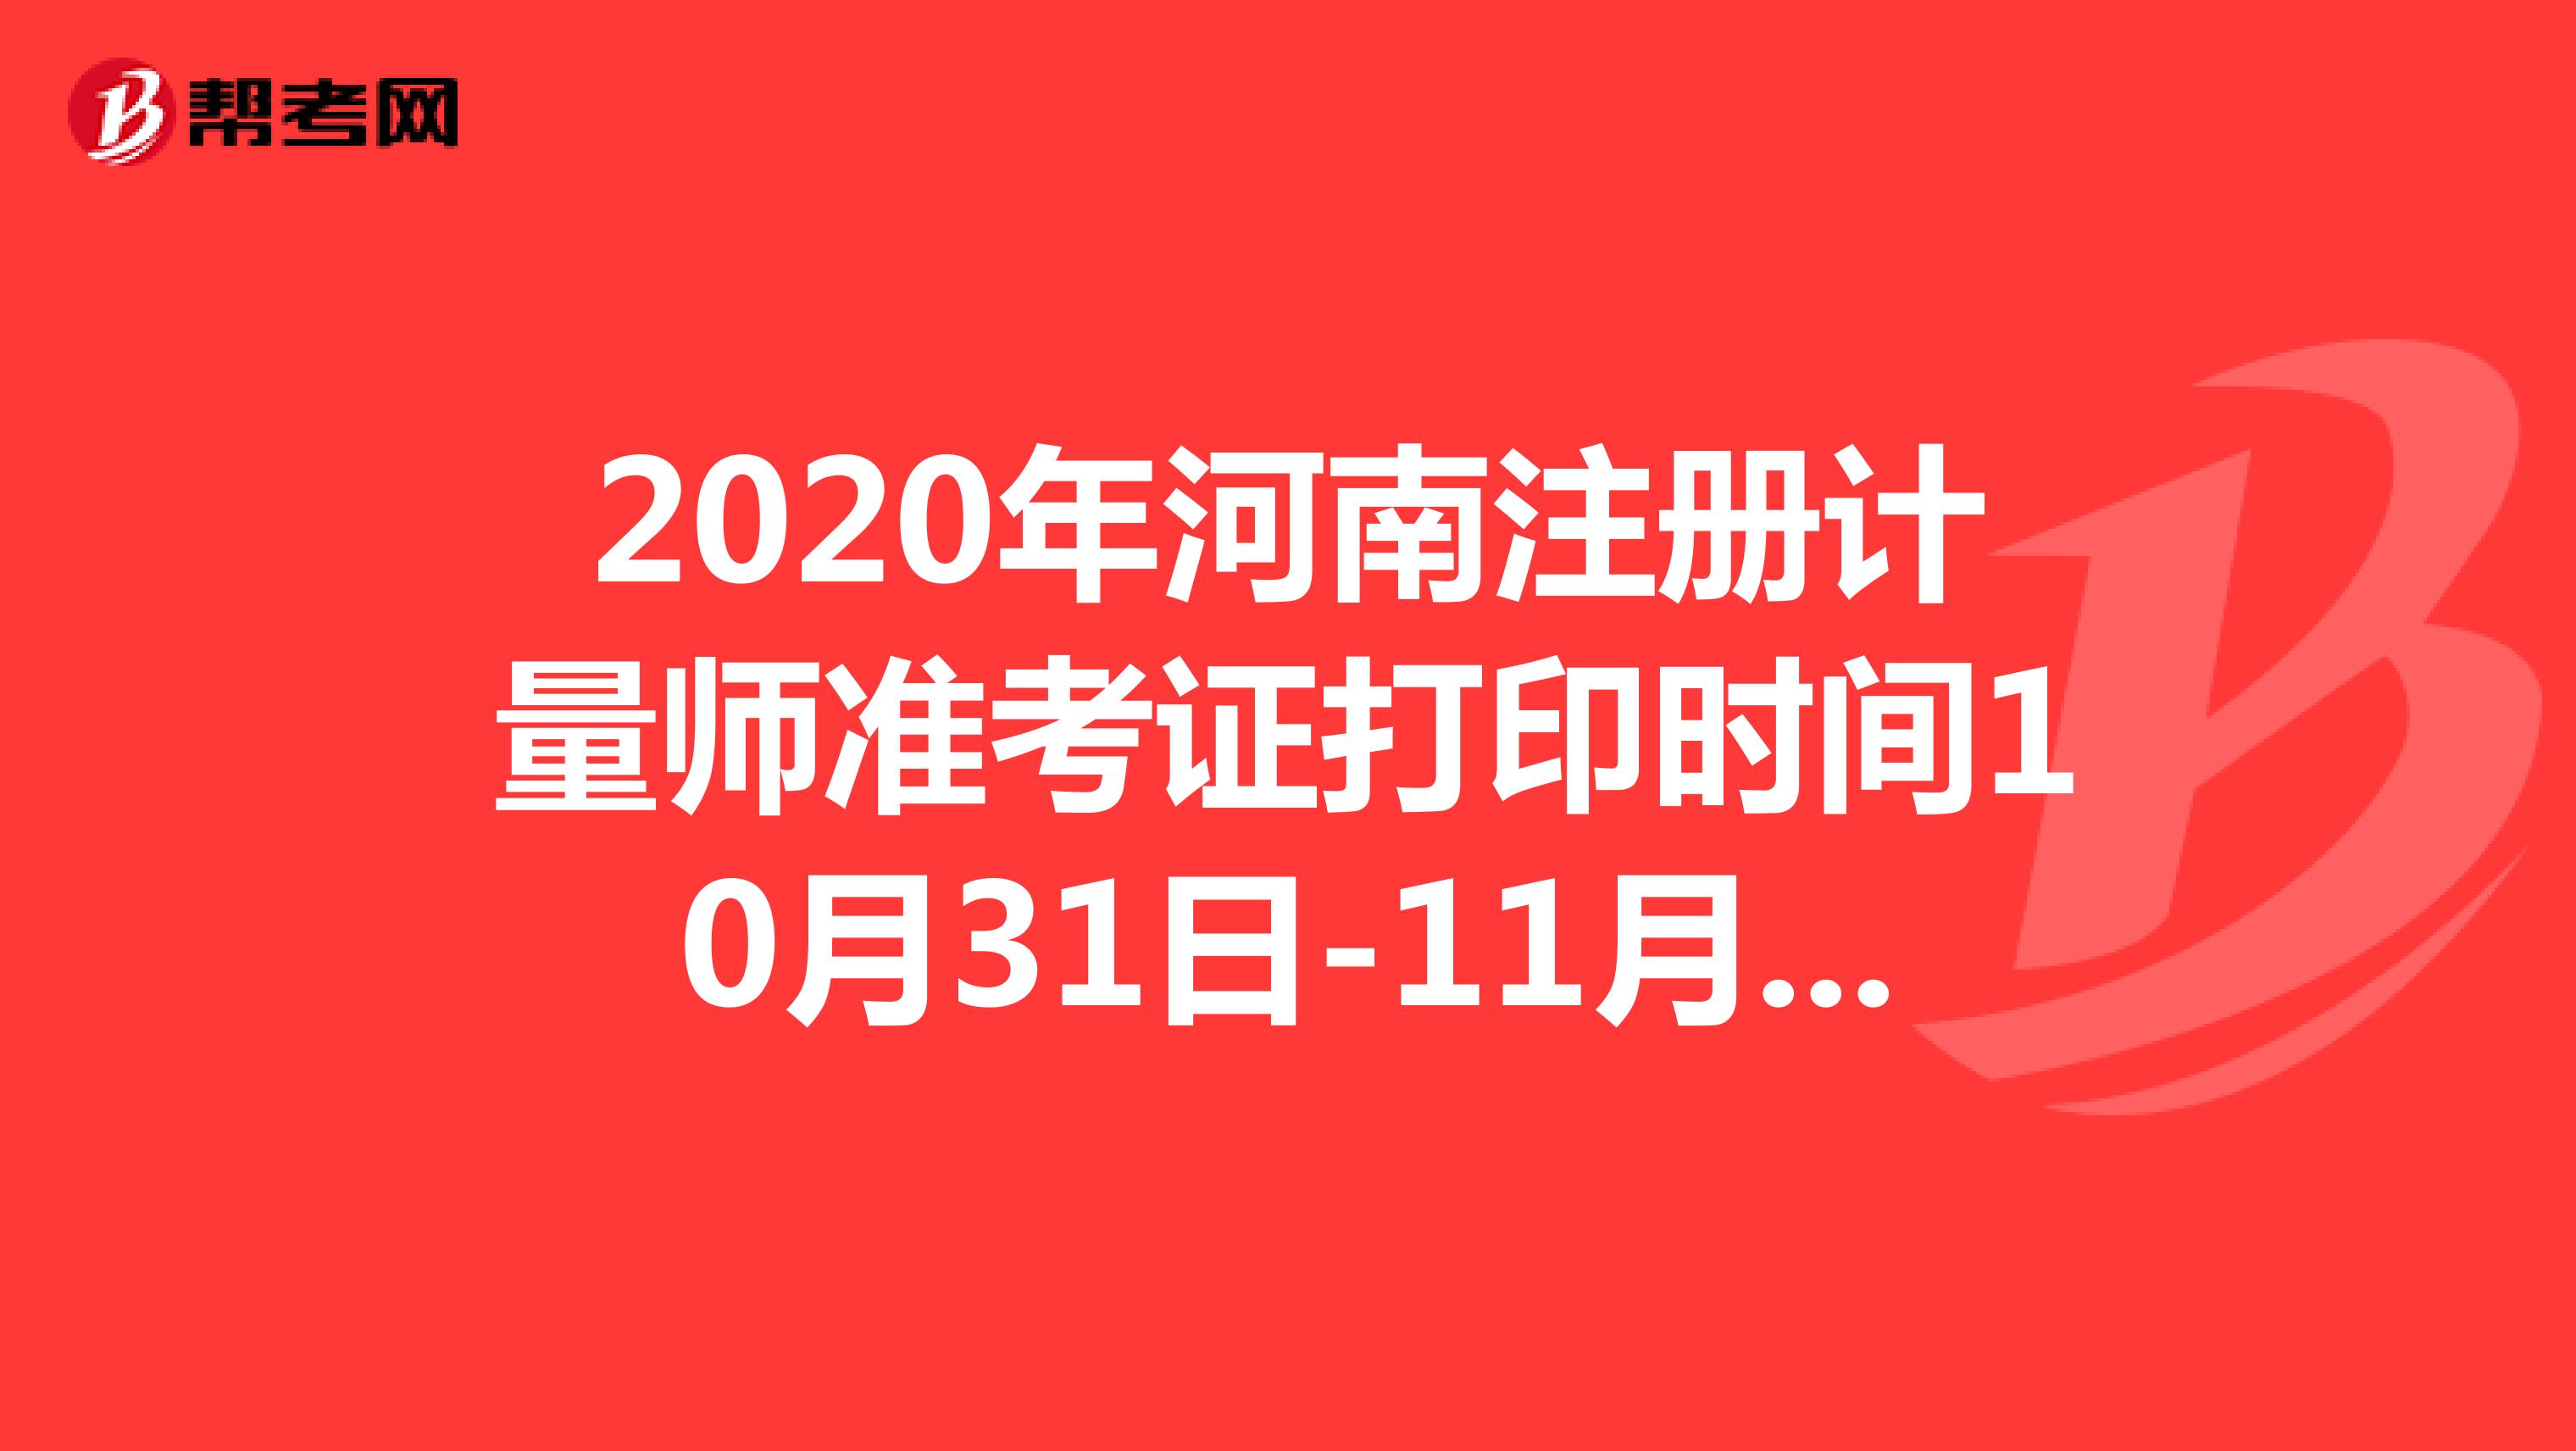 2020年河南注册计量师准考证打印时间10月31日-11月6日